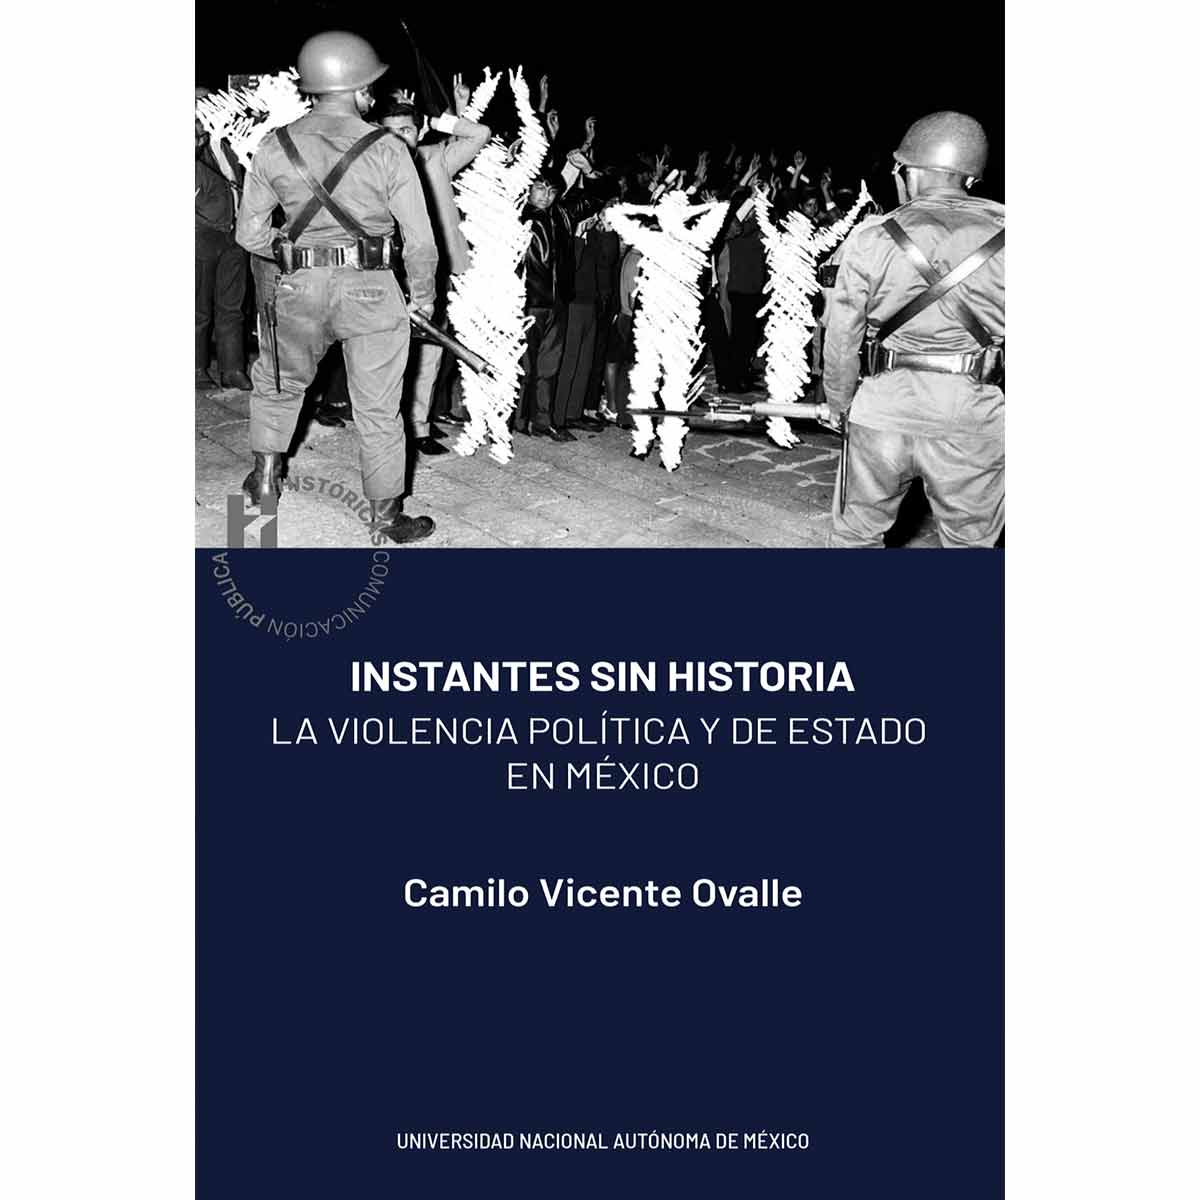 INSTANTES SIN HISTORIA. LA VIOLENCIA POLITICA Y DE ESTADO EN MÉXICO